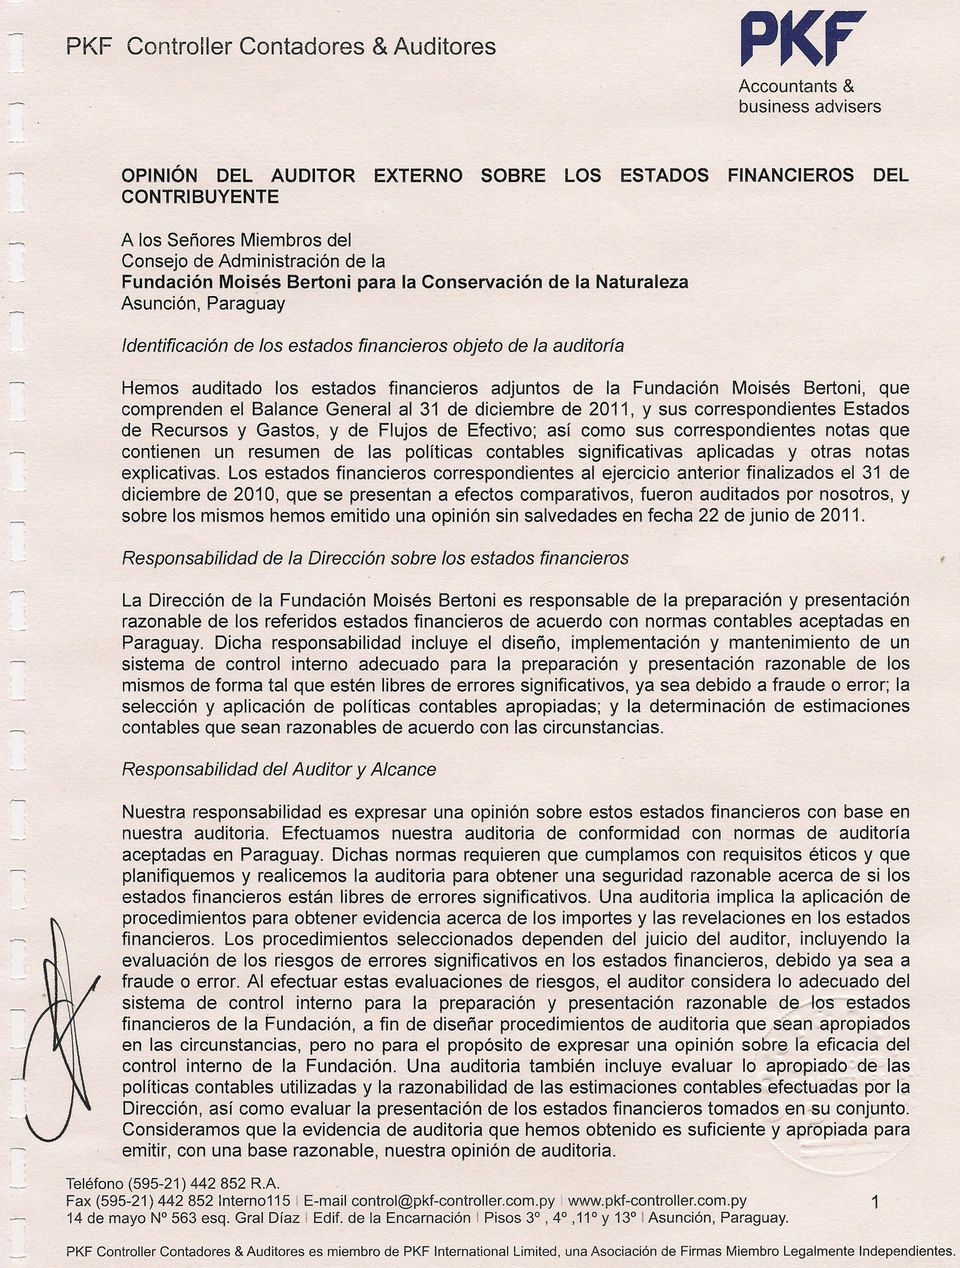 adjuntos de la Fundación Moisés Bertoni, que comprenden el Balance General al 31 de diciembre de 2011, Y sus correspondientes Estados de Recursos y Gastos, y de Flujos de Efectivo; así como sus